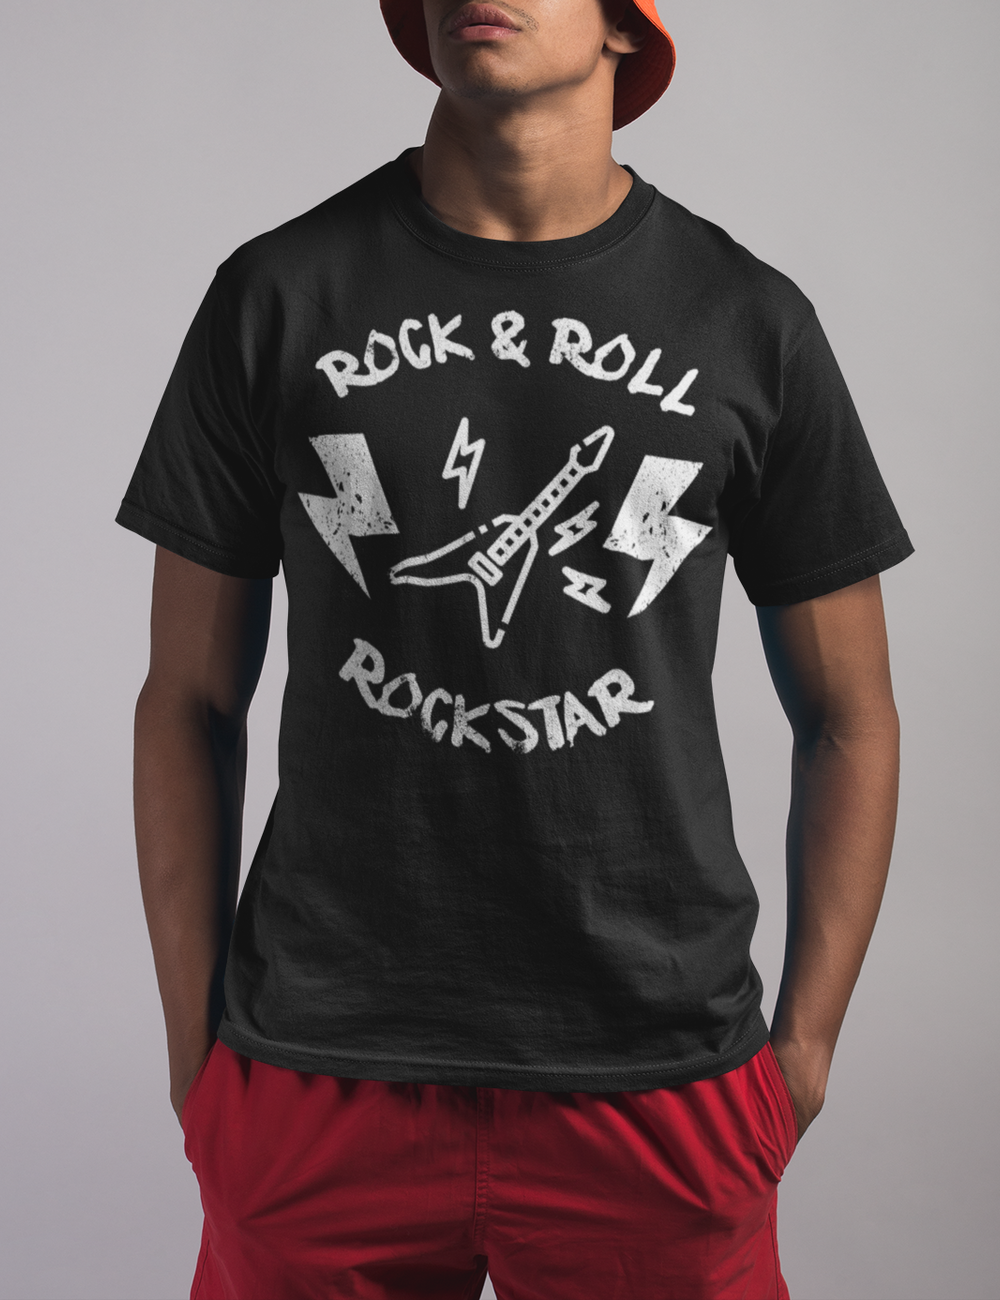 Rock & Roll Rockstar Men's Classic T-Shirt OniTakai